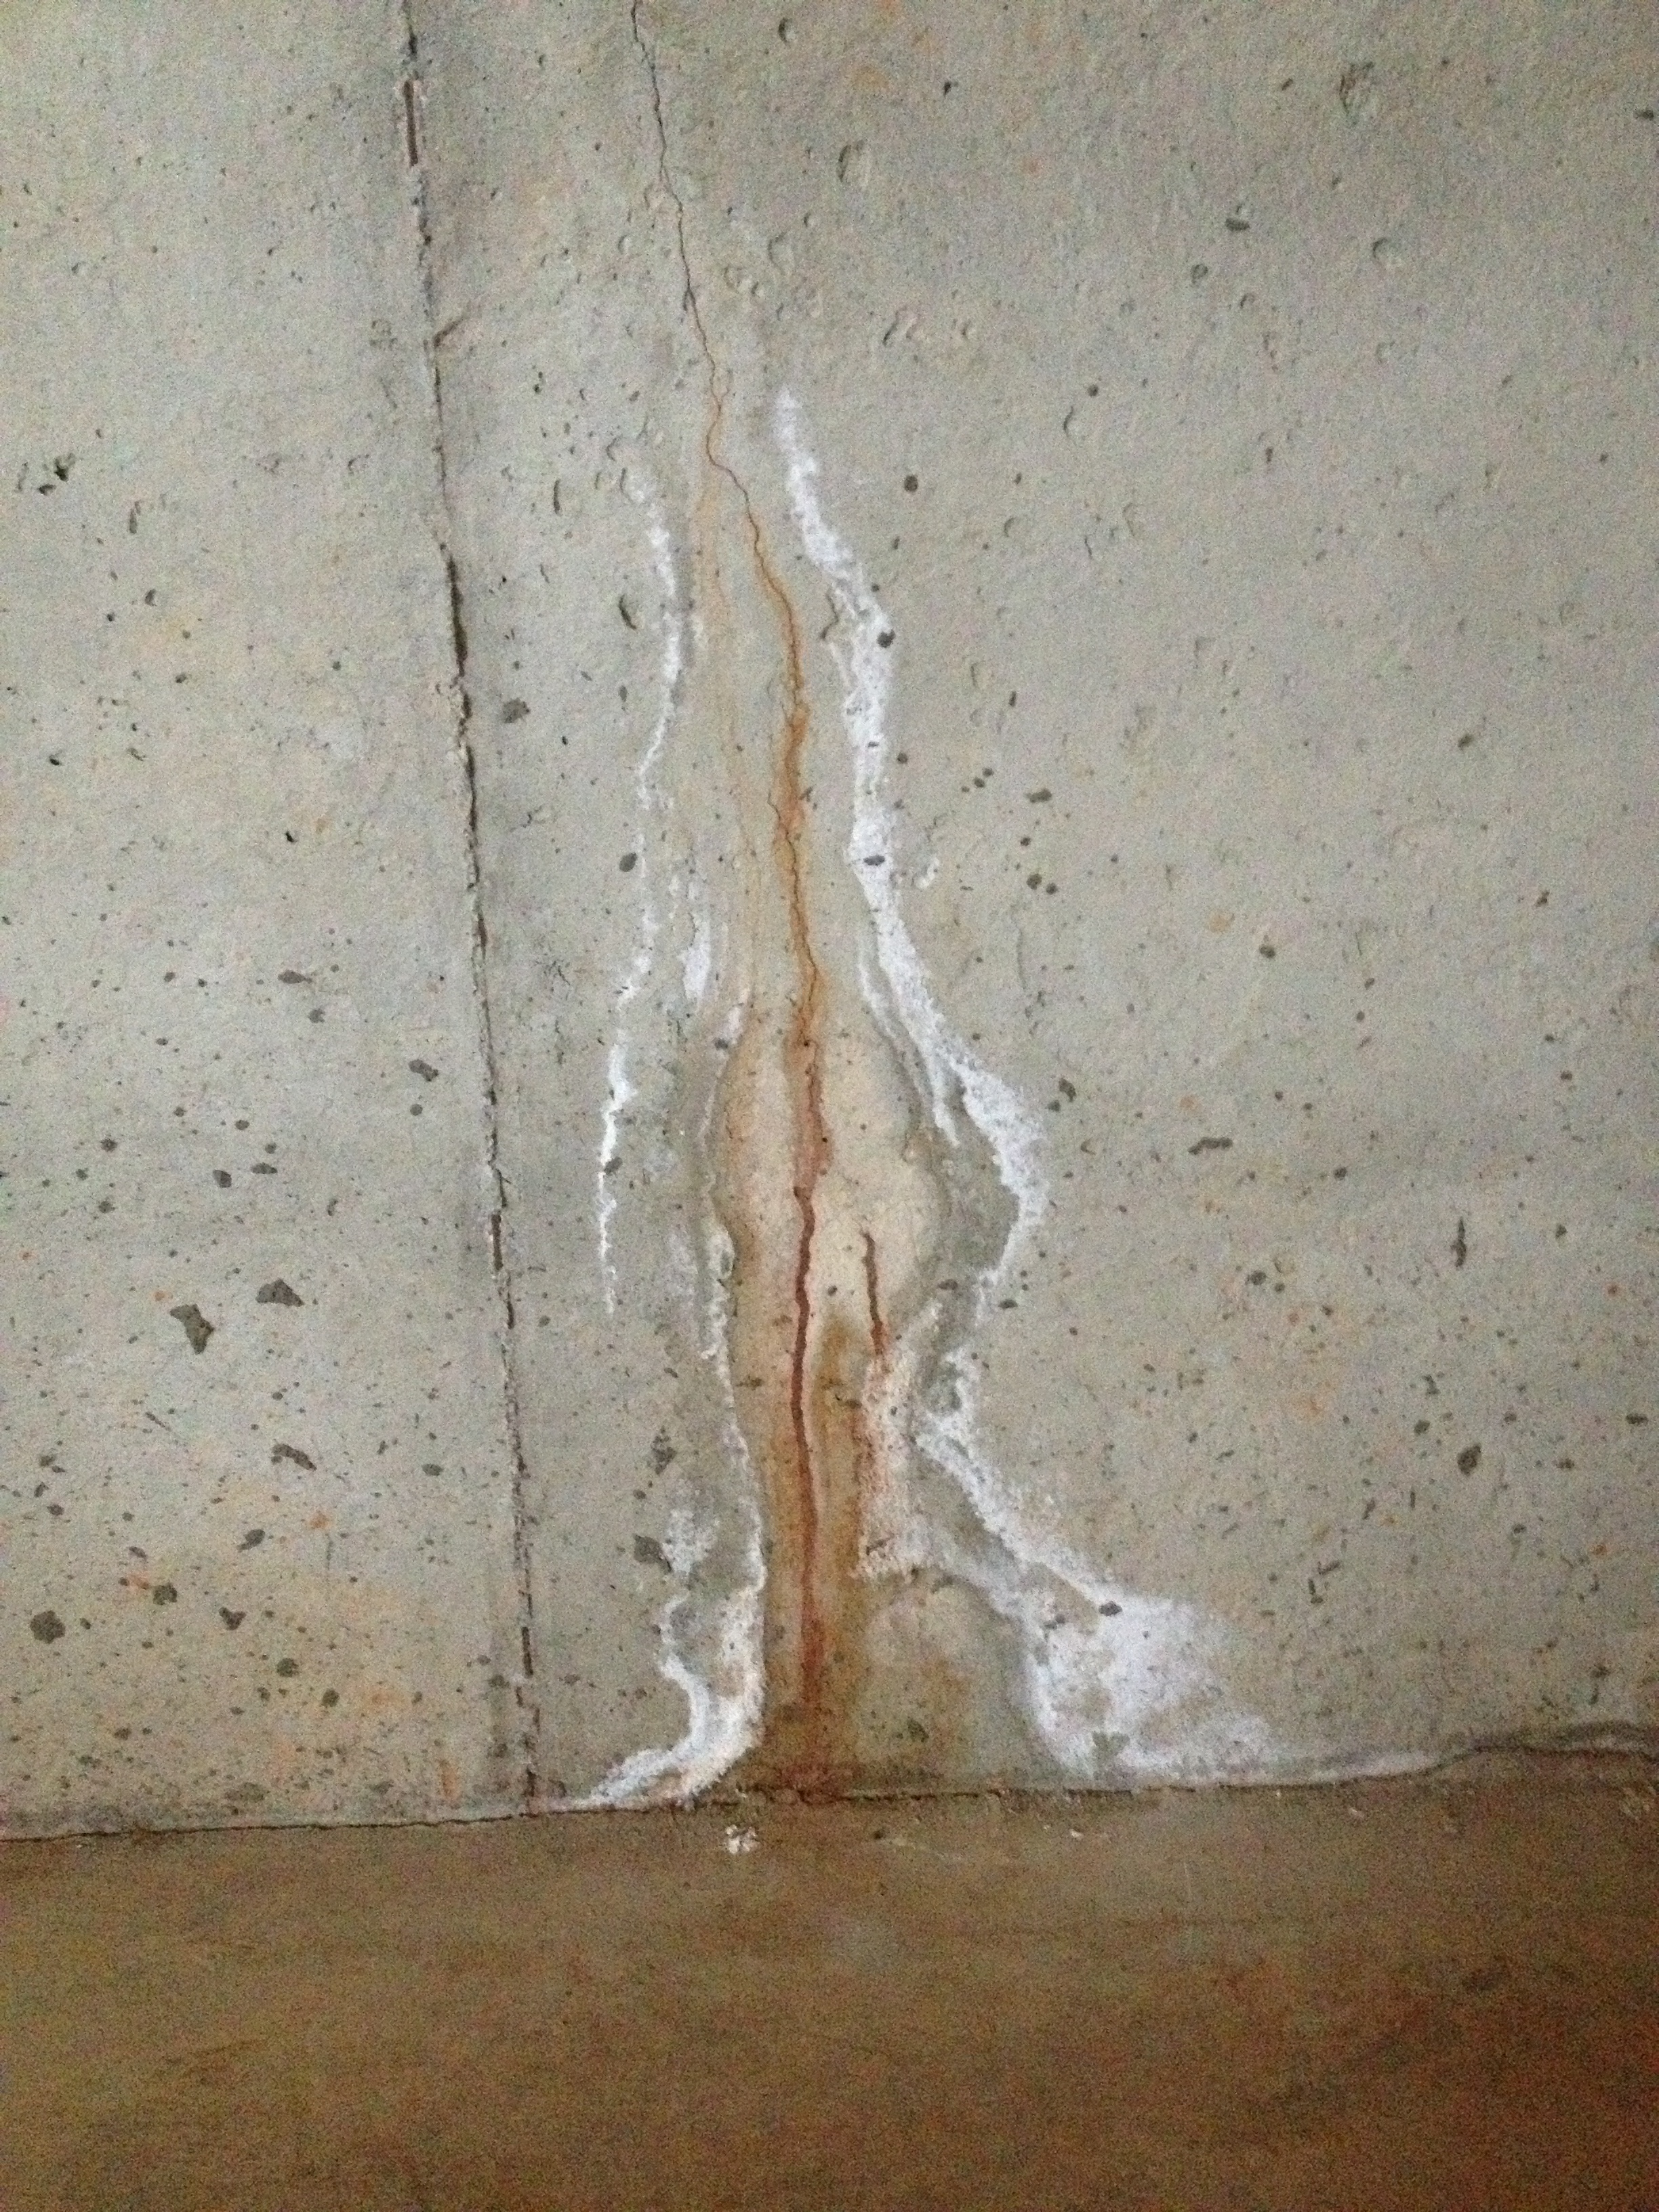 Water Leak in Basement Foundation Walls